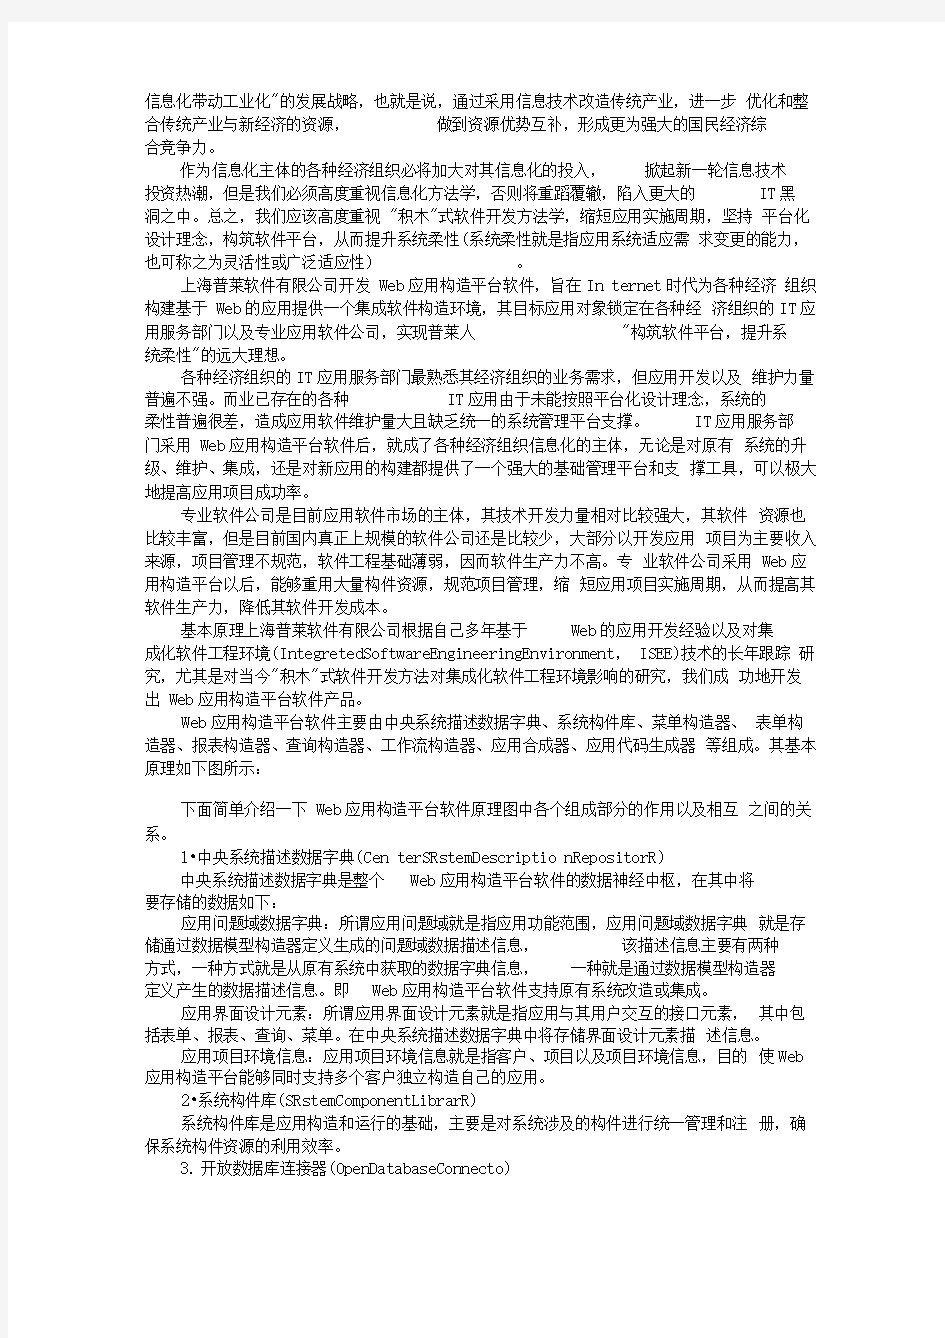 上海普莱软件有限公司技术白皮书